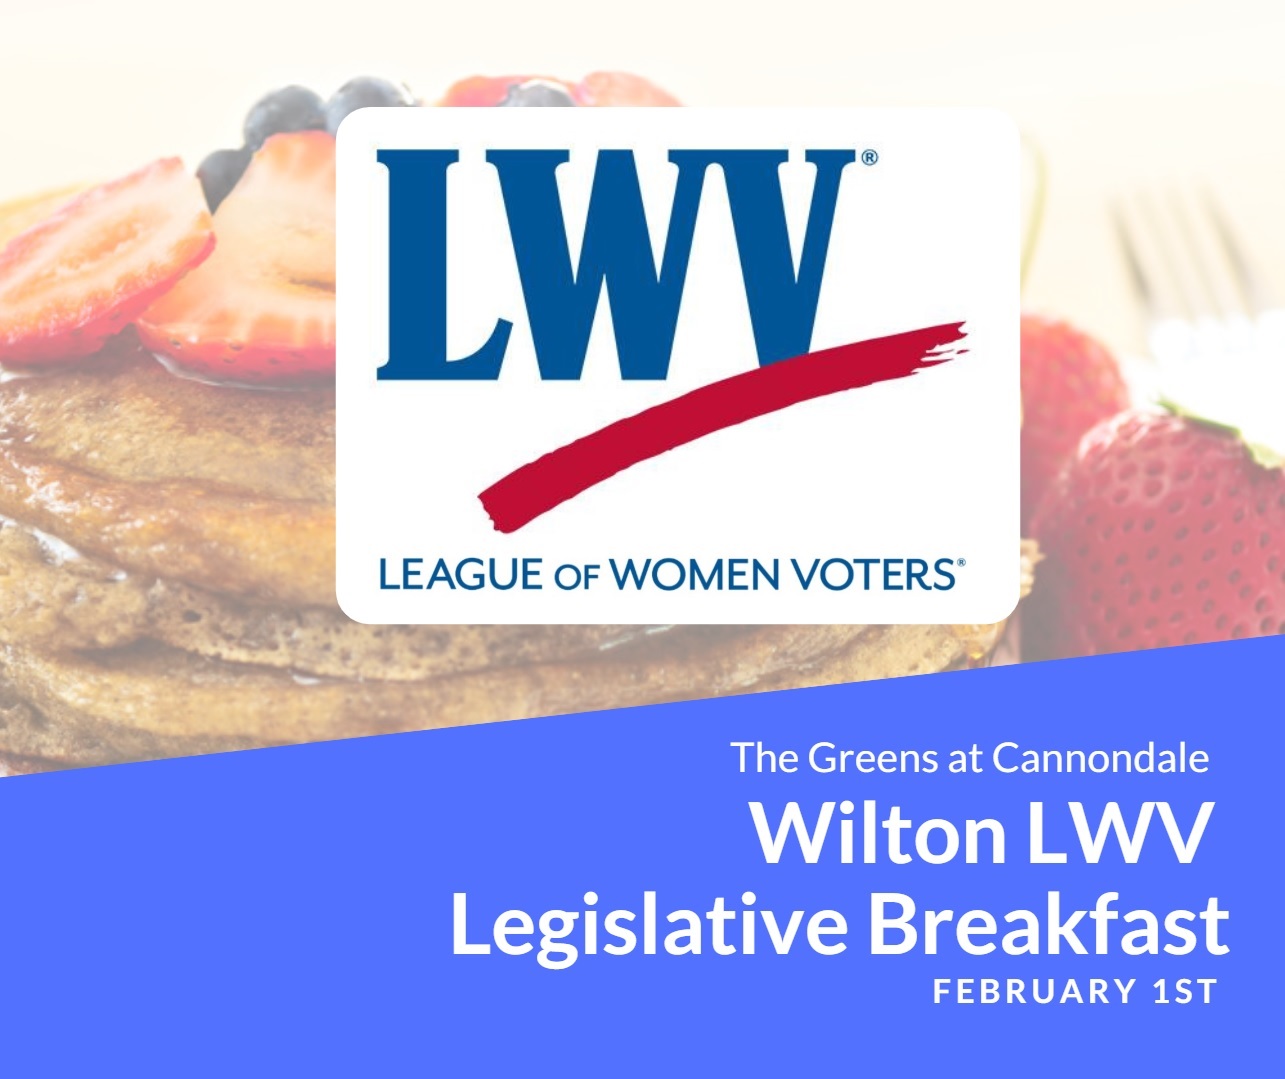 Wilton League of Women Voters Legislative Breakfast Image